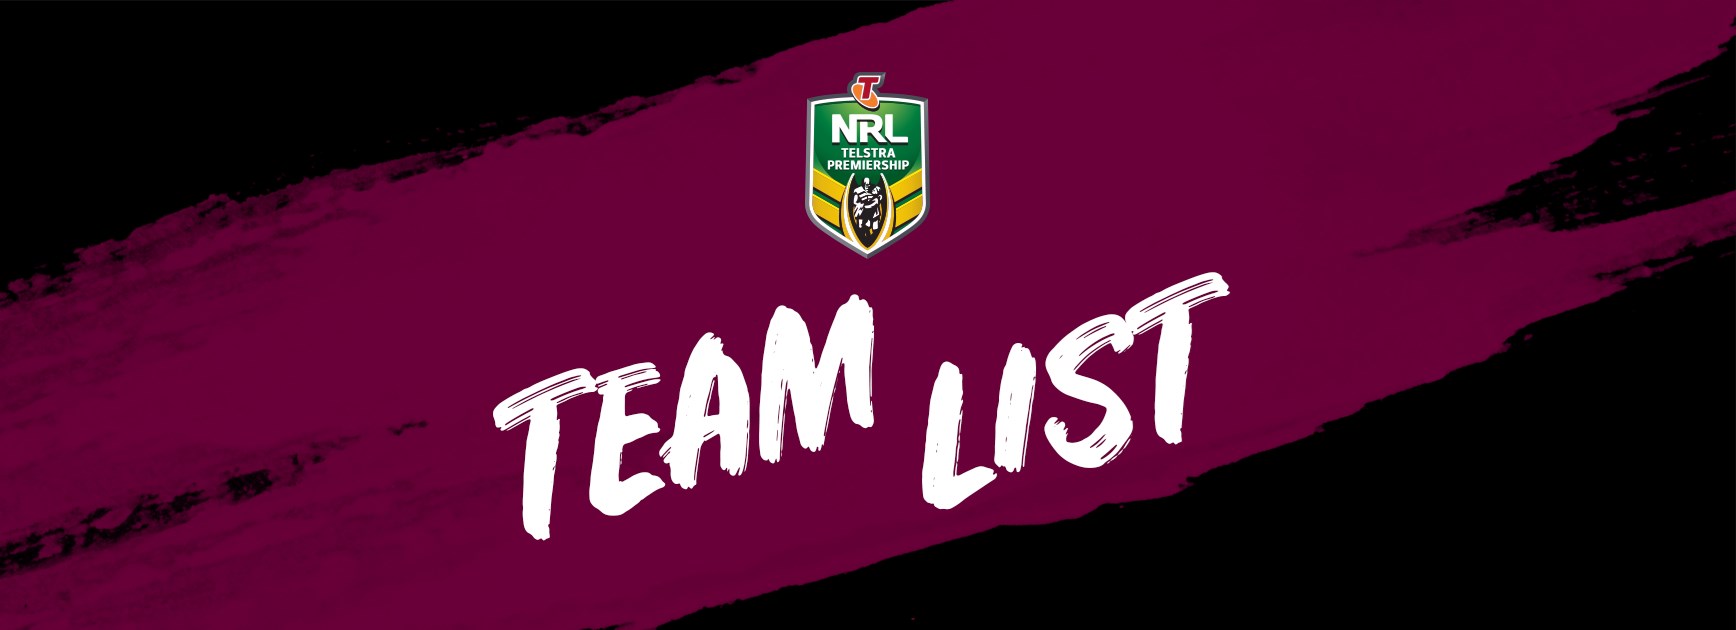 NRL Team List - Round 21